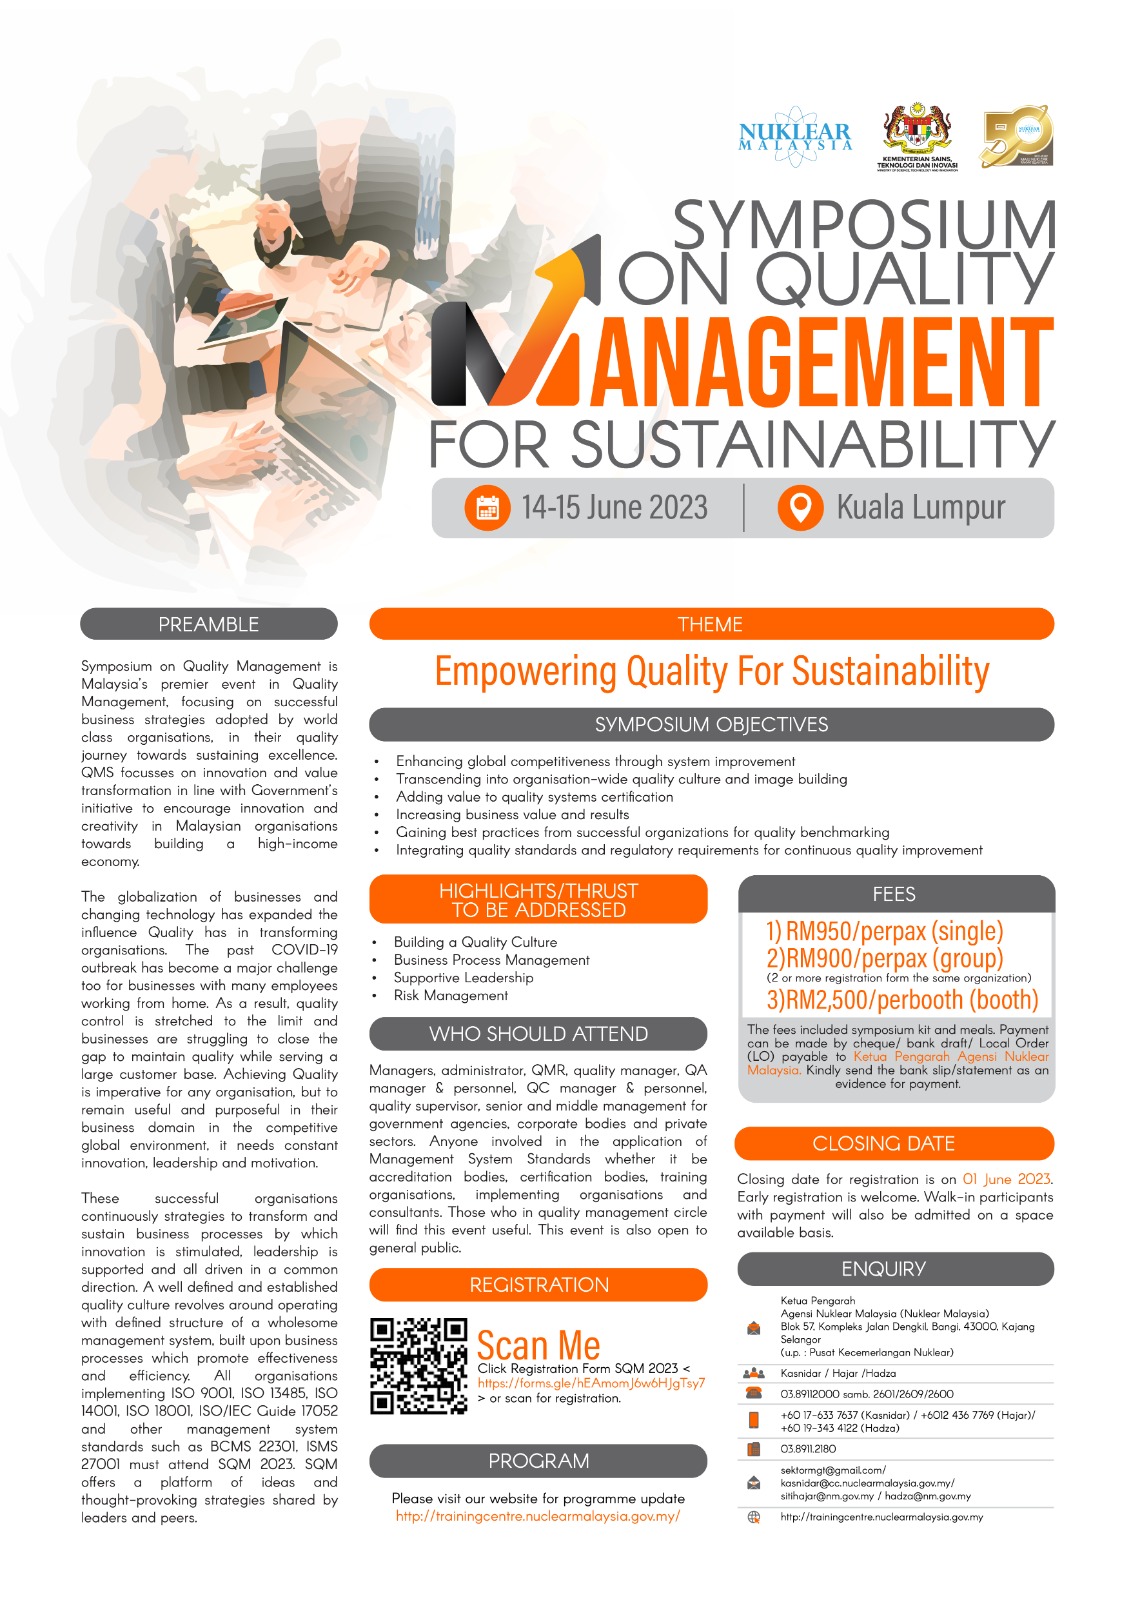 Symposium On Quality Management For Sustainability